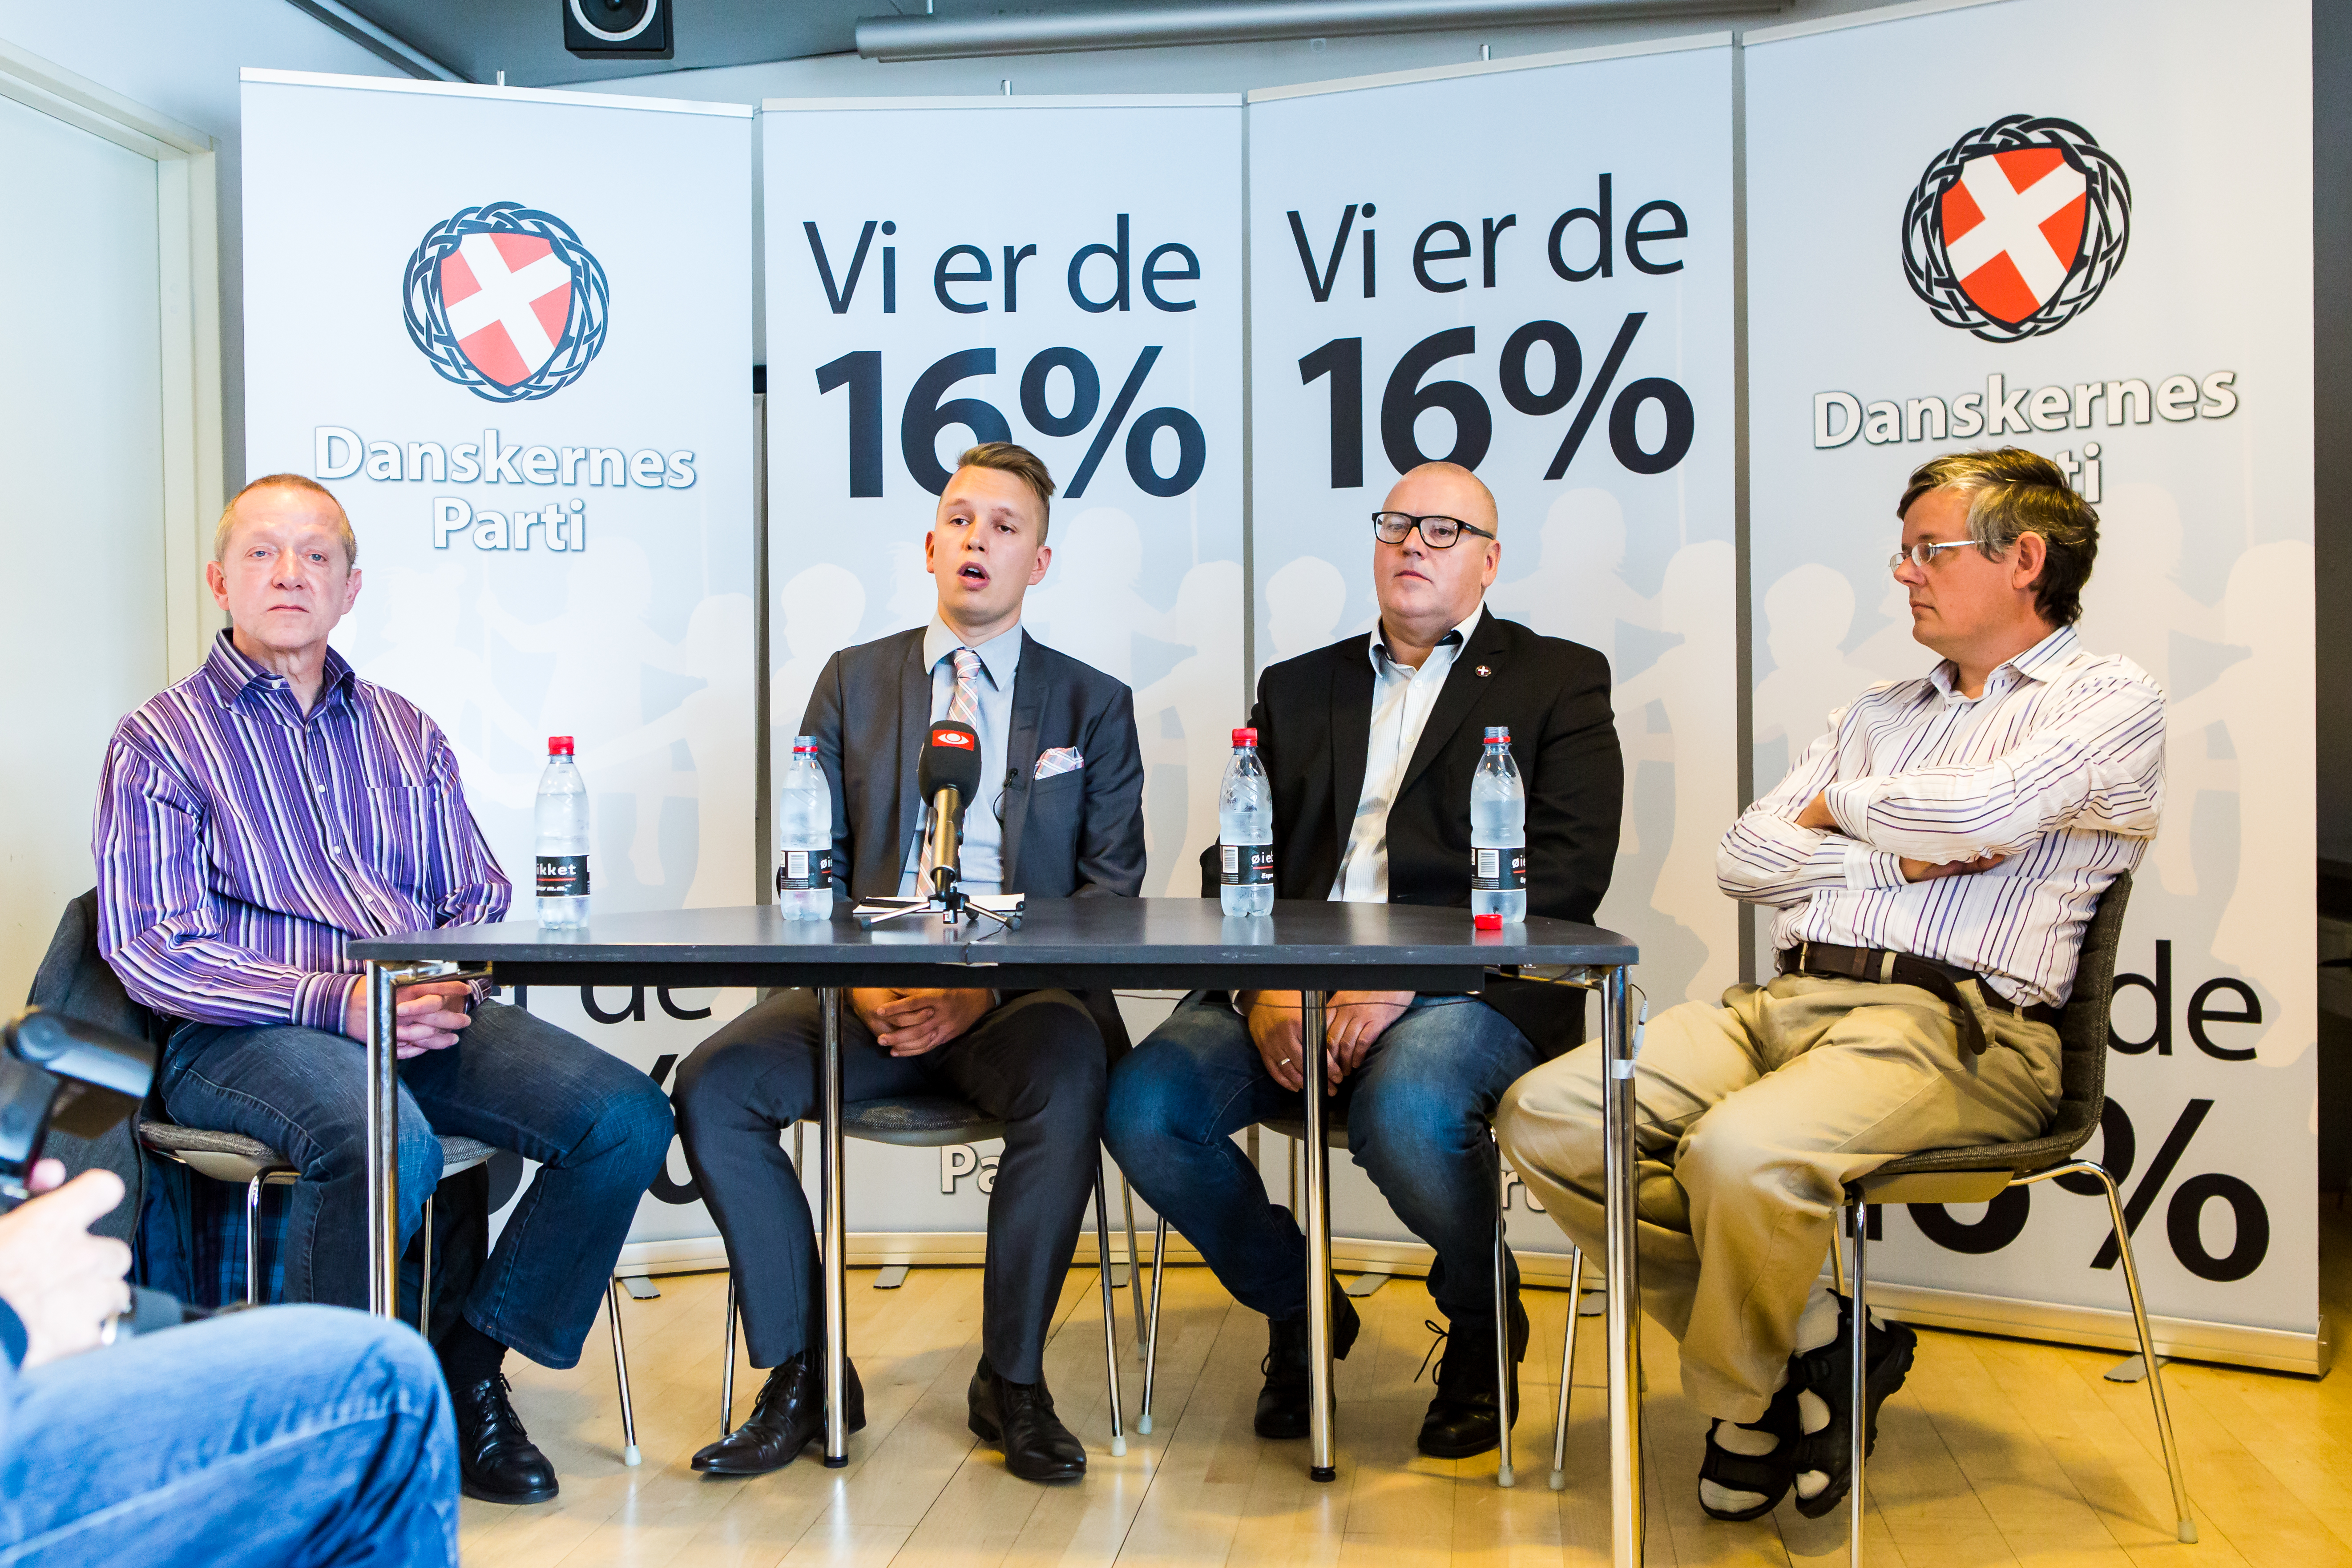 Den 13. august 2016 havde Danskernes Parti indkaldt til pressemøde i Den Sorte Diamant i København, ved mødet fremlagde Daniel Carlsen sammen med resten af ledelsen resultatet af en meningsmåling partiet havde fået udført. (Foto: Redox)